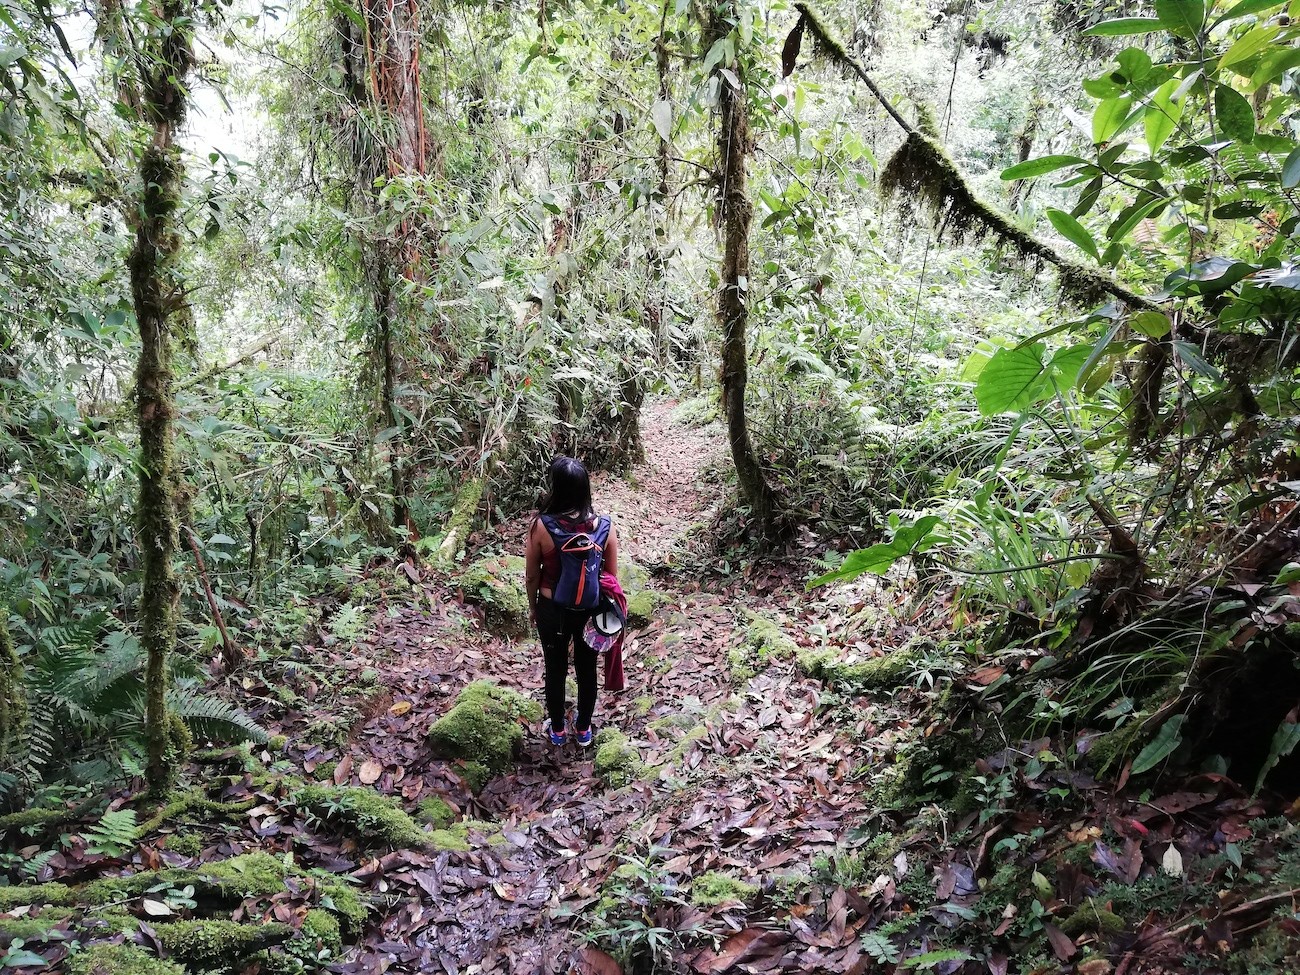 Concurso ‘Redescubre Costa Rica busca’ dará fondos a propuestas de turismo sostenible